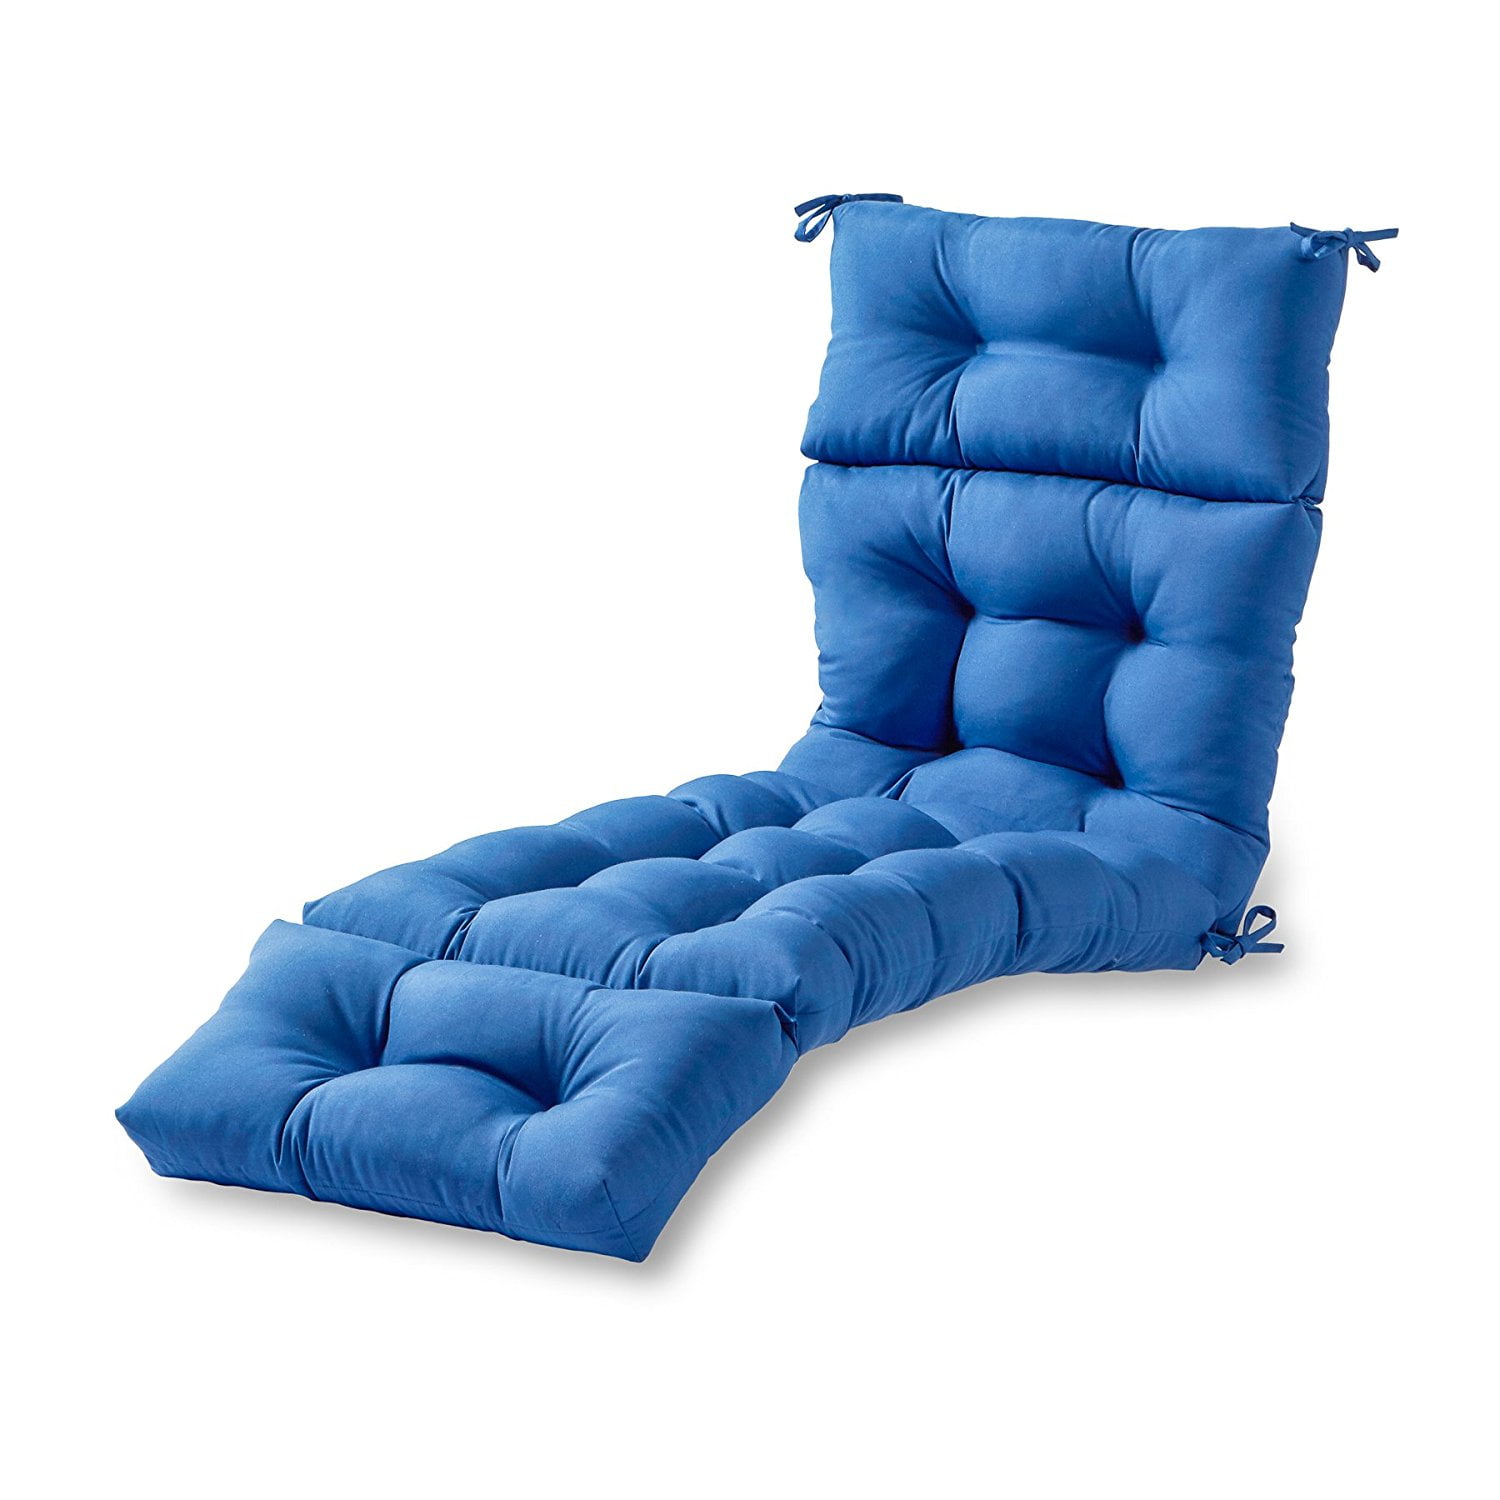 72" Romhouse High Rebound Foam Chaise Lounge Solid Chair Cushion Seat Mat Pad 